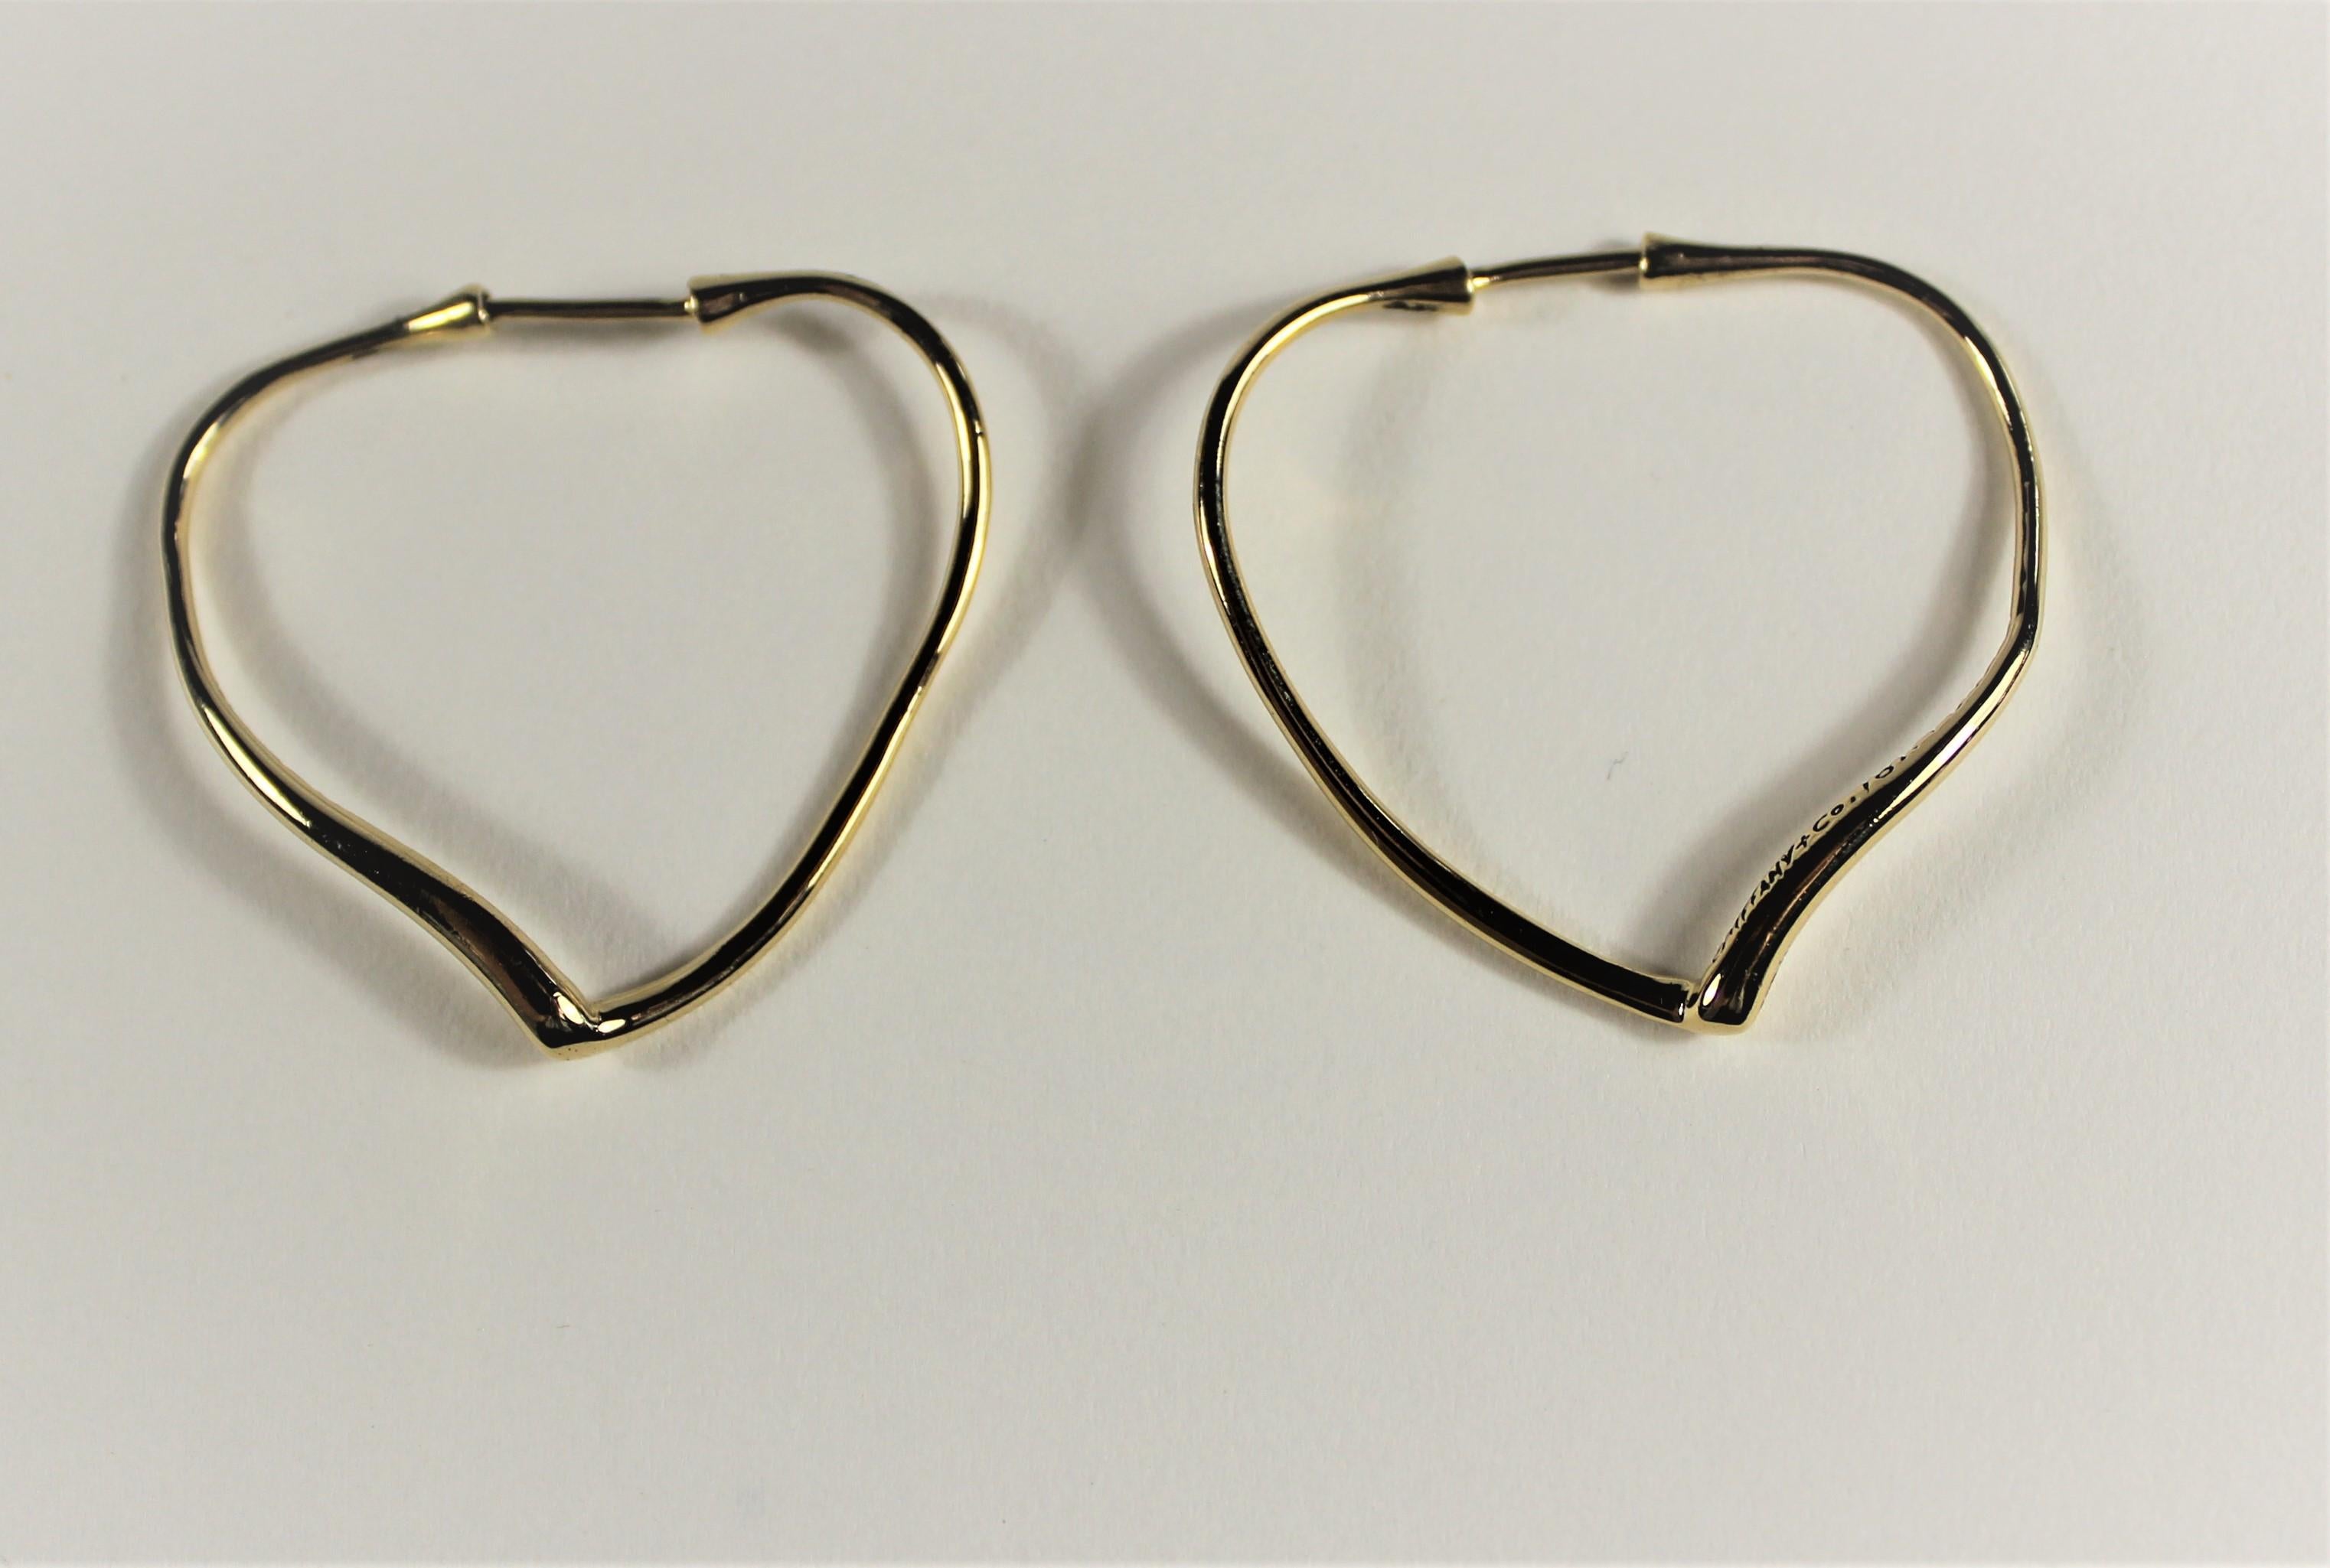 Tiffany & Co. Heart Shape Earrings by Peretti, circa 1980s Damen